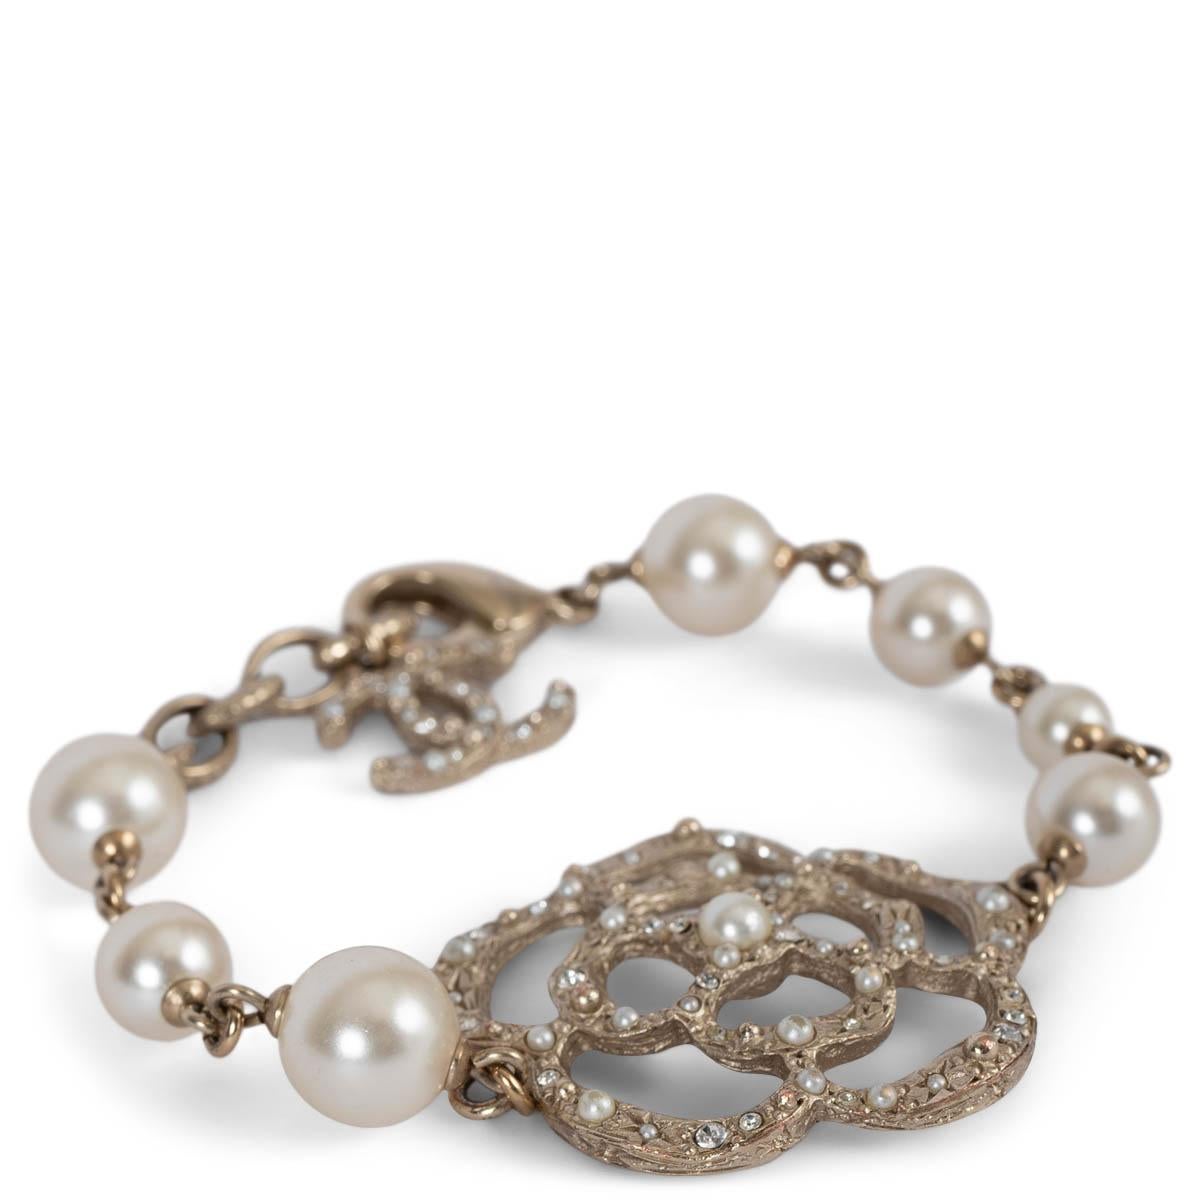 Bracelet Chanellia 100% authentique en métal doré léger avec fausses perles blanches en nacre et Camélia incrusté de cristaux et de perles. A été porté et est en excellent état. Livré avec boîte. 

Collection 2014